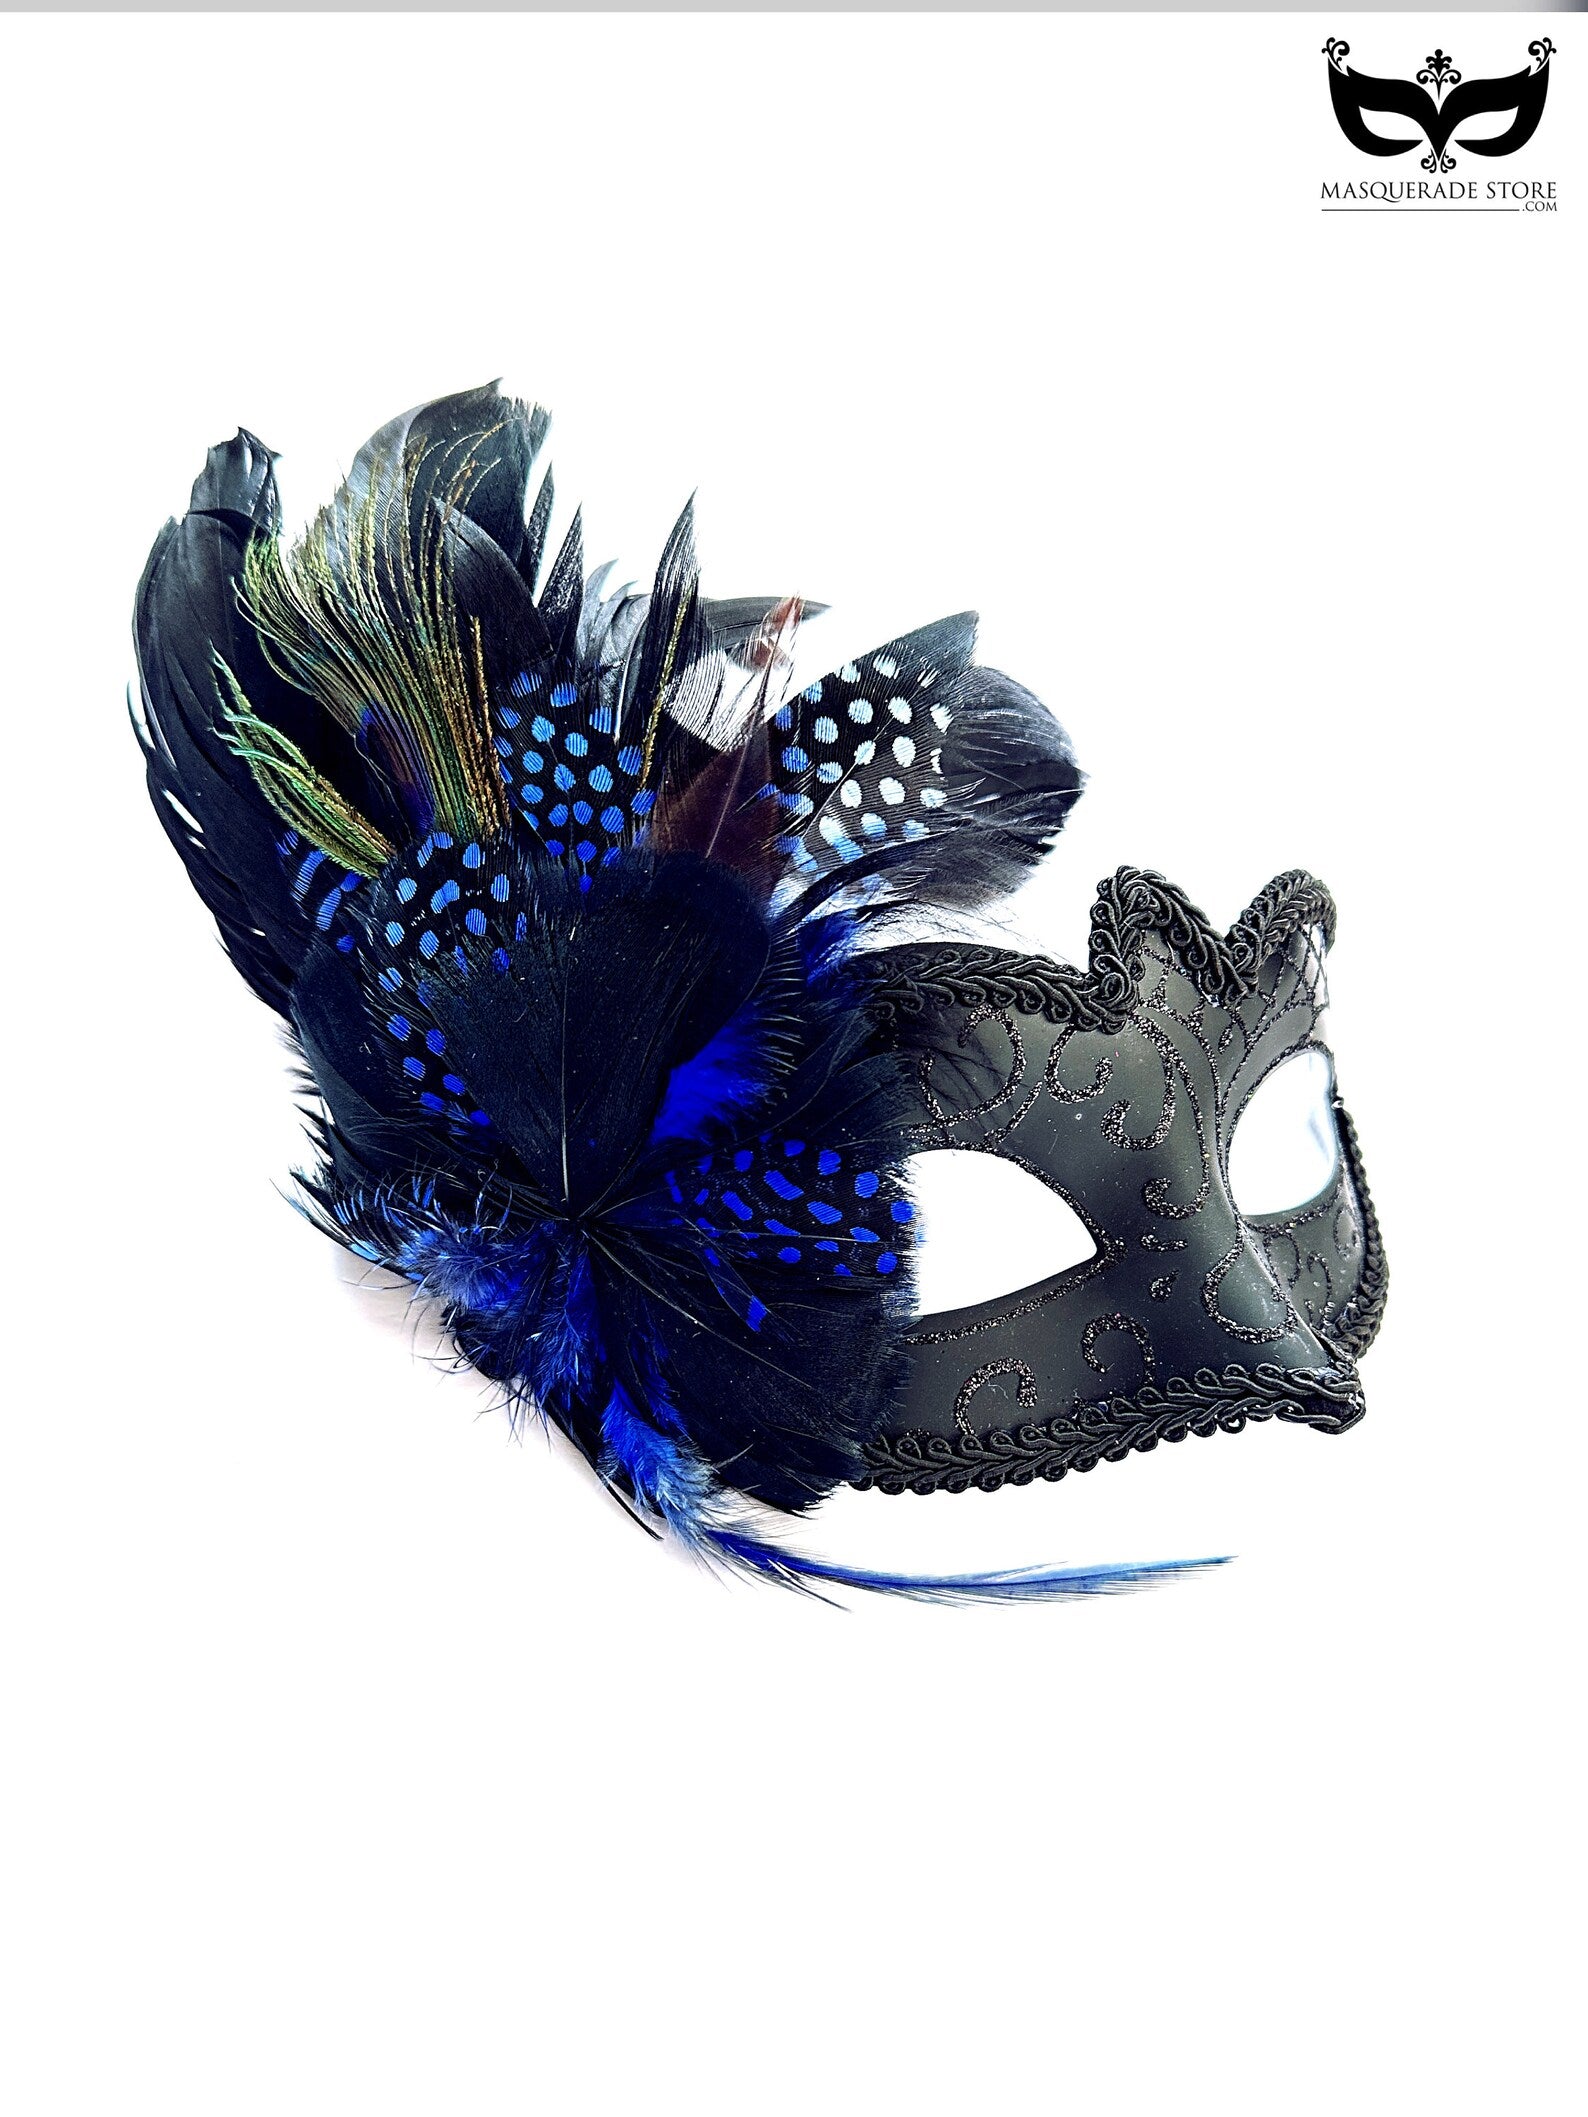 Gladiator Couples Masks - Blue/Black